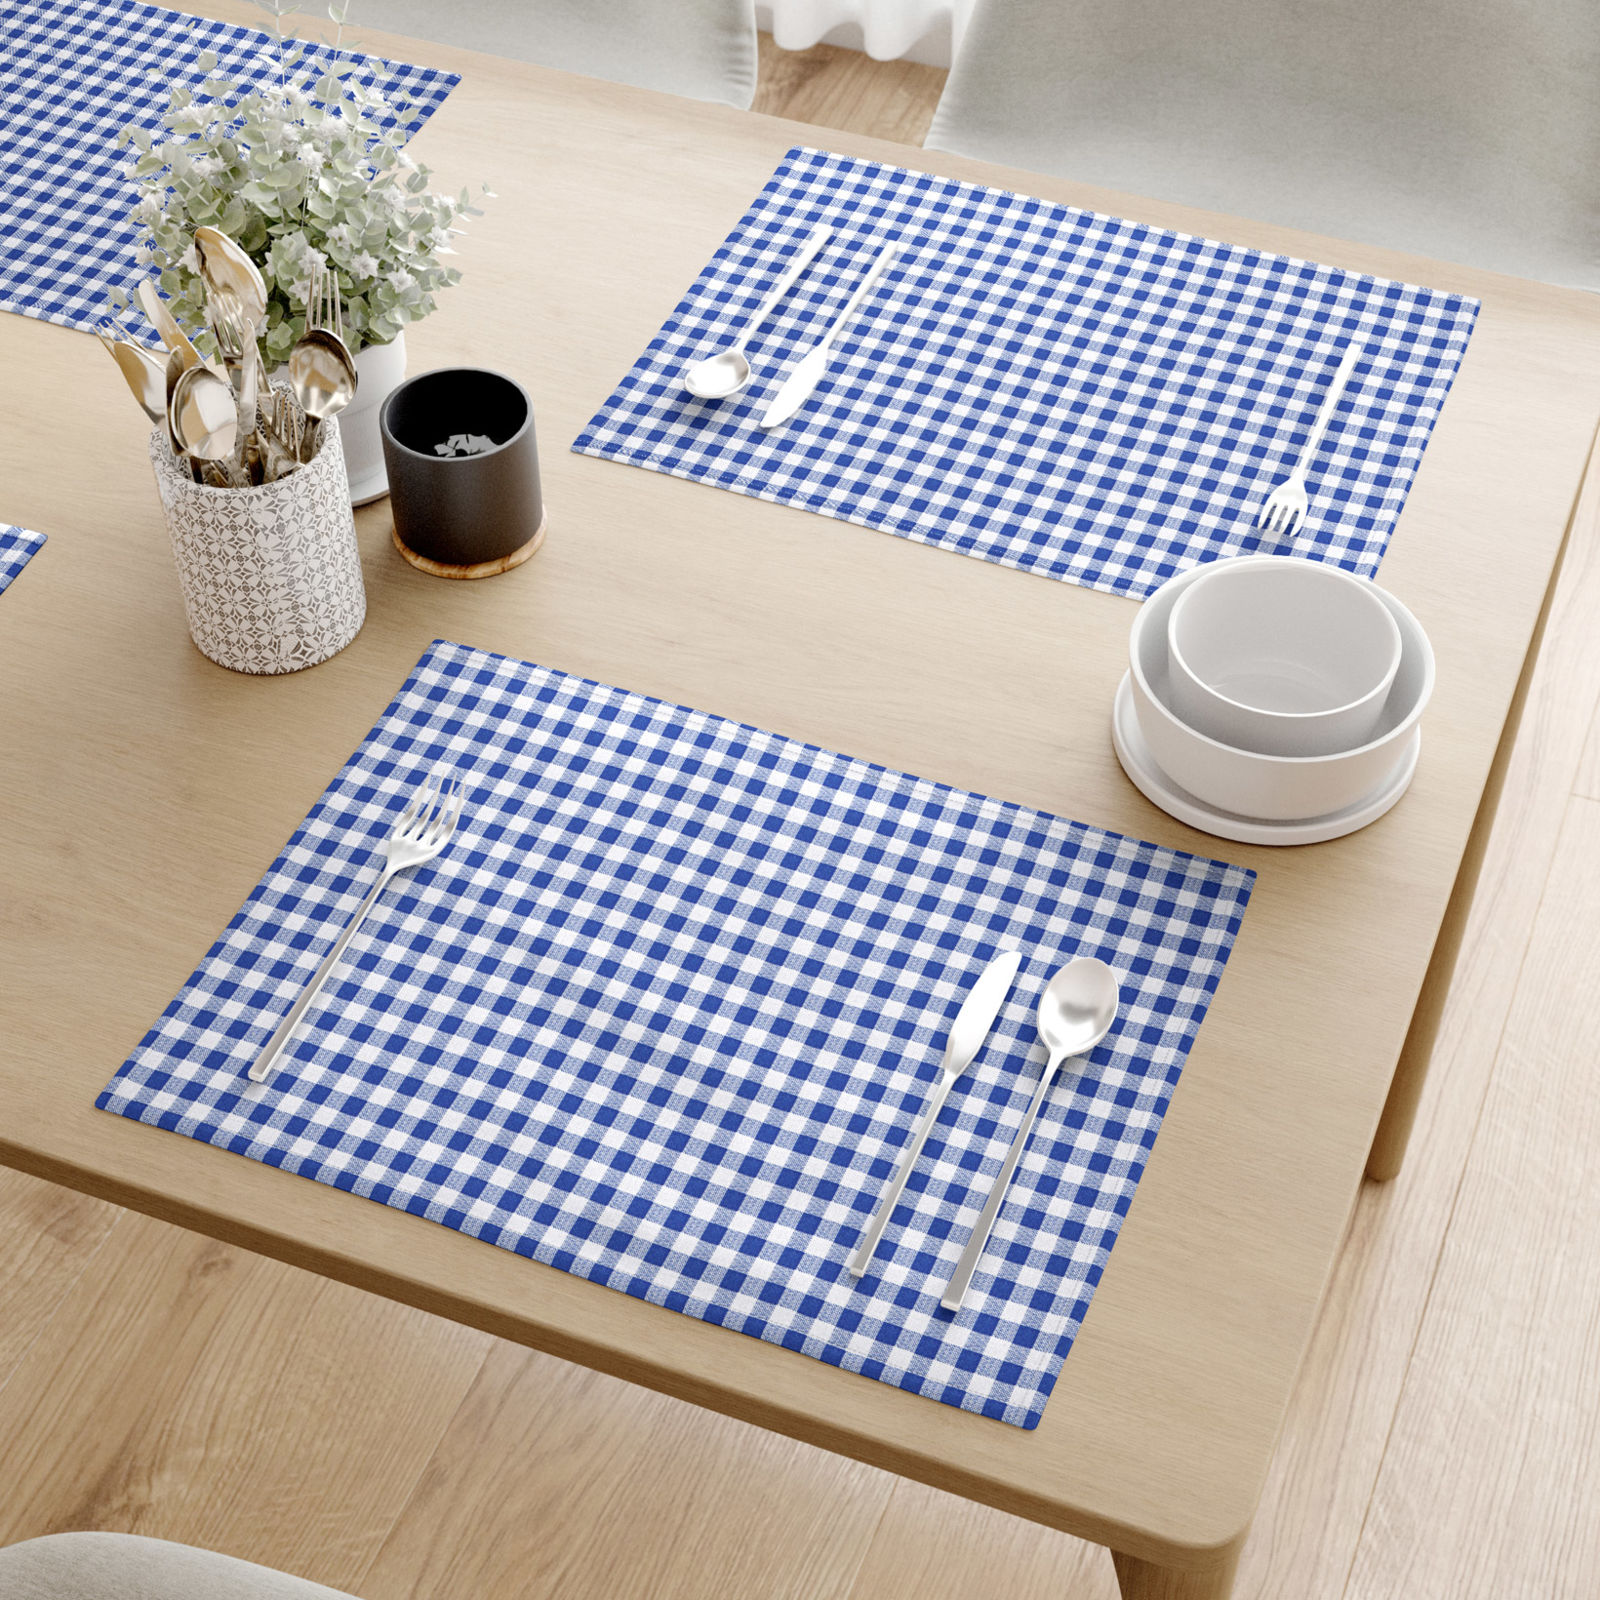 Podkładka na stół z płótna bawełnianego - niebiesko-biała kratka - 2szt.